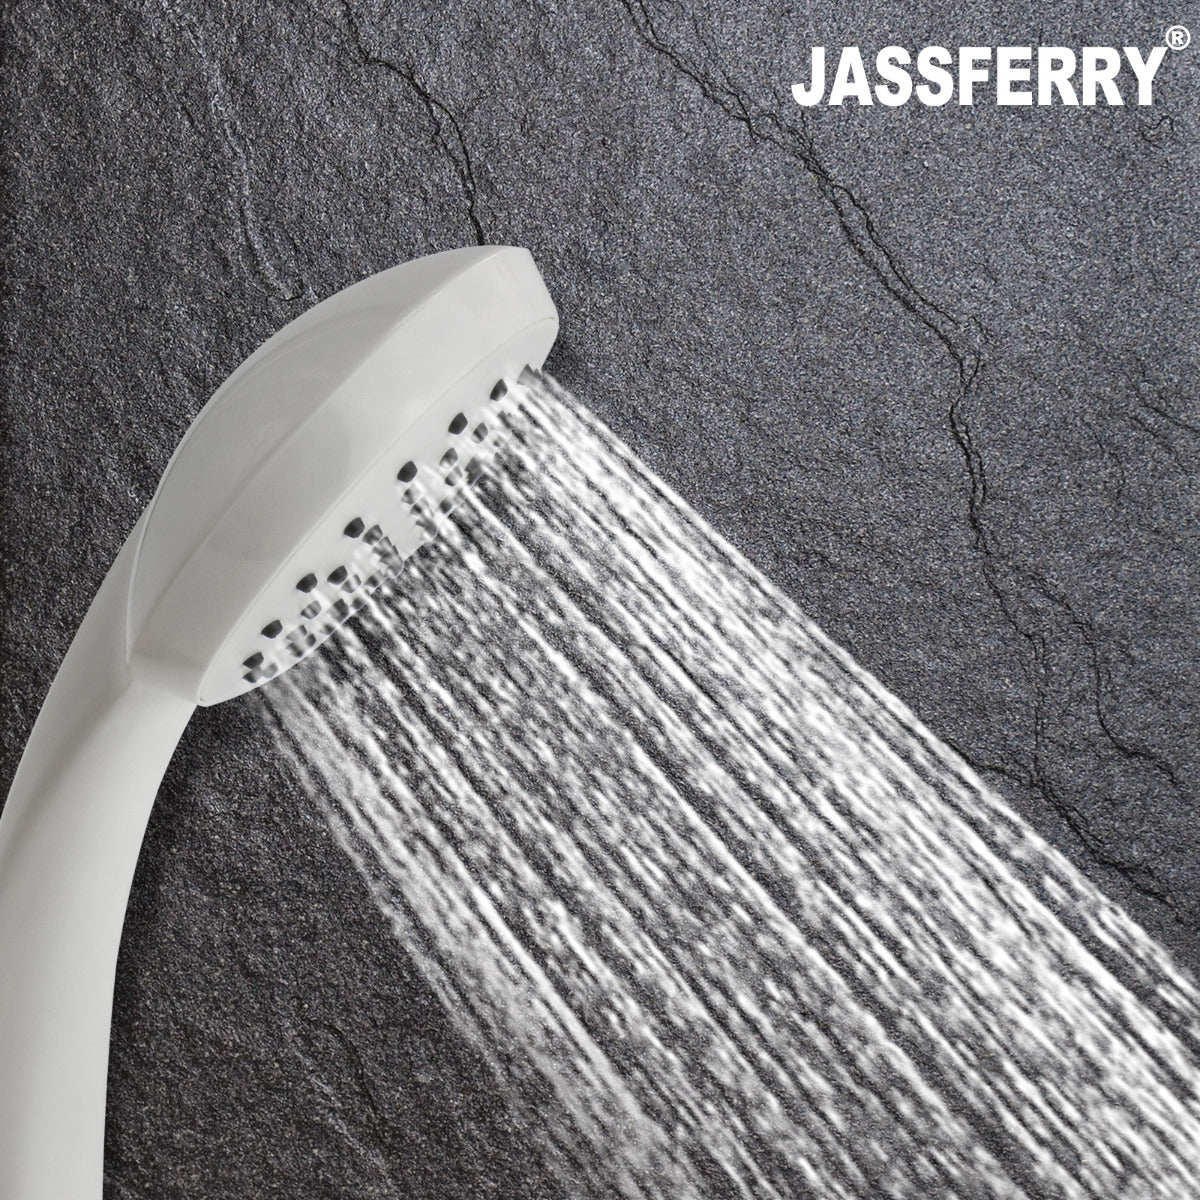 JassferryJASSFERRY White Single Function Handheld Shower Head Replacement Bathroom HandsetShower Heads